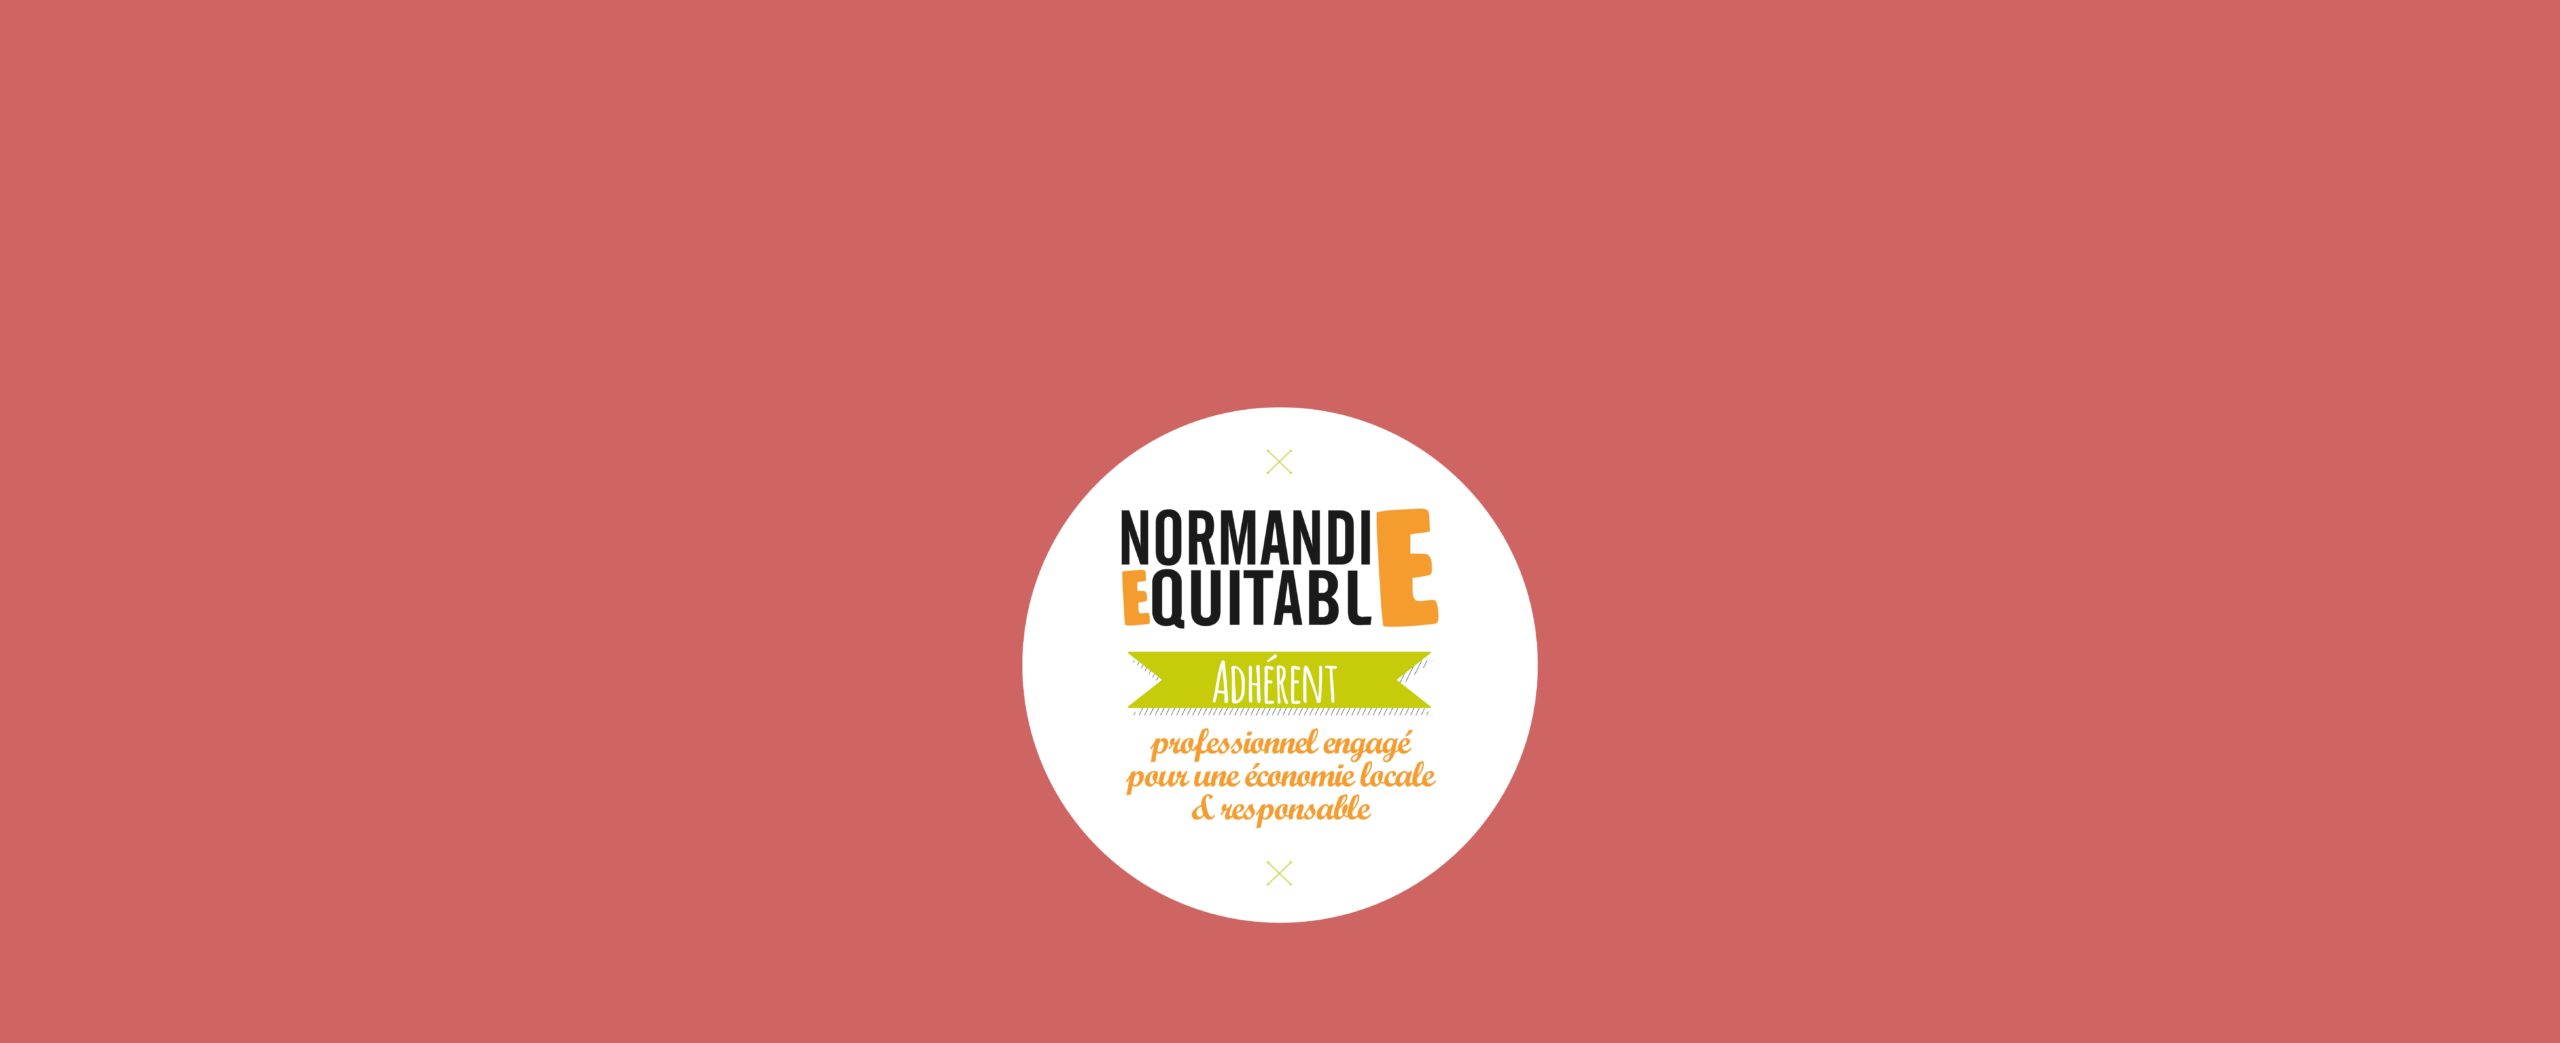 Badge d'adhérent de Normandie Equitable